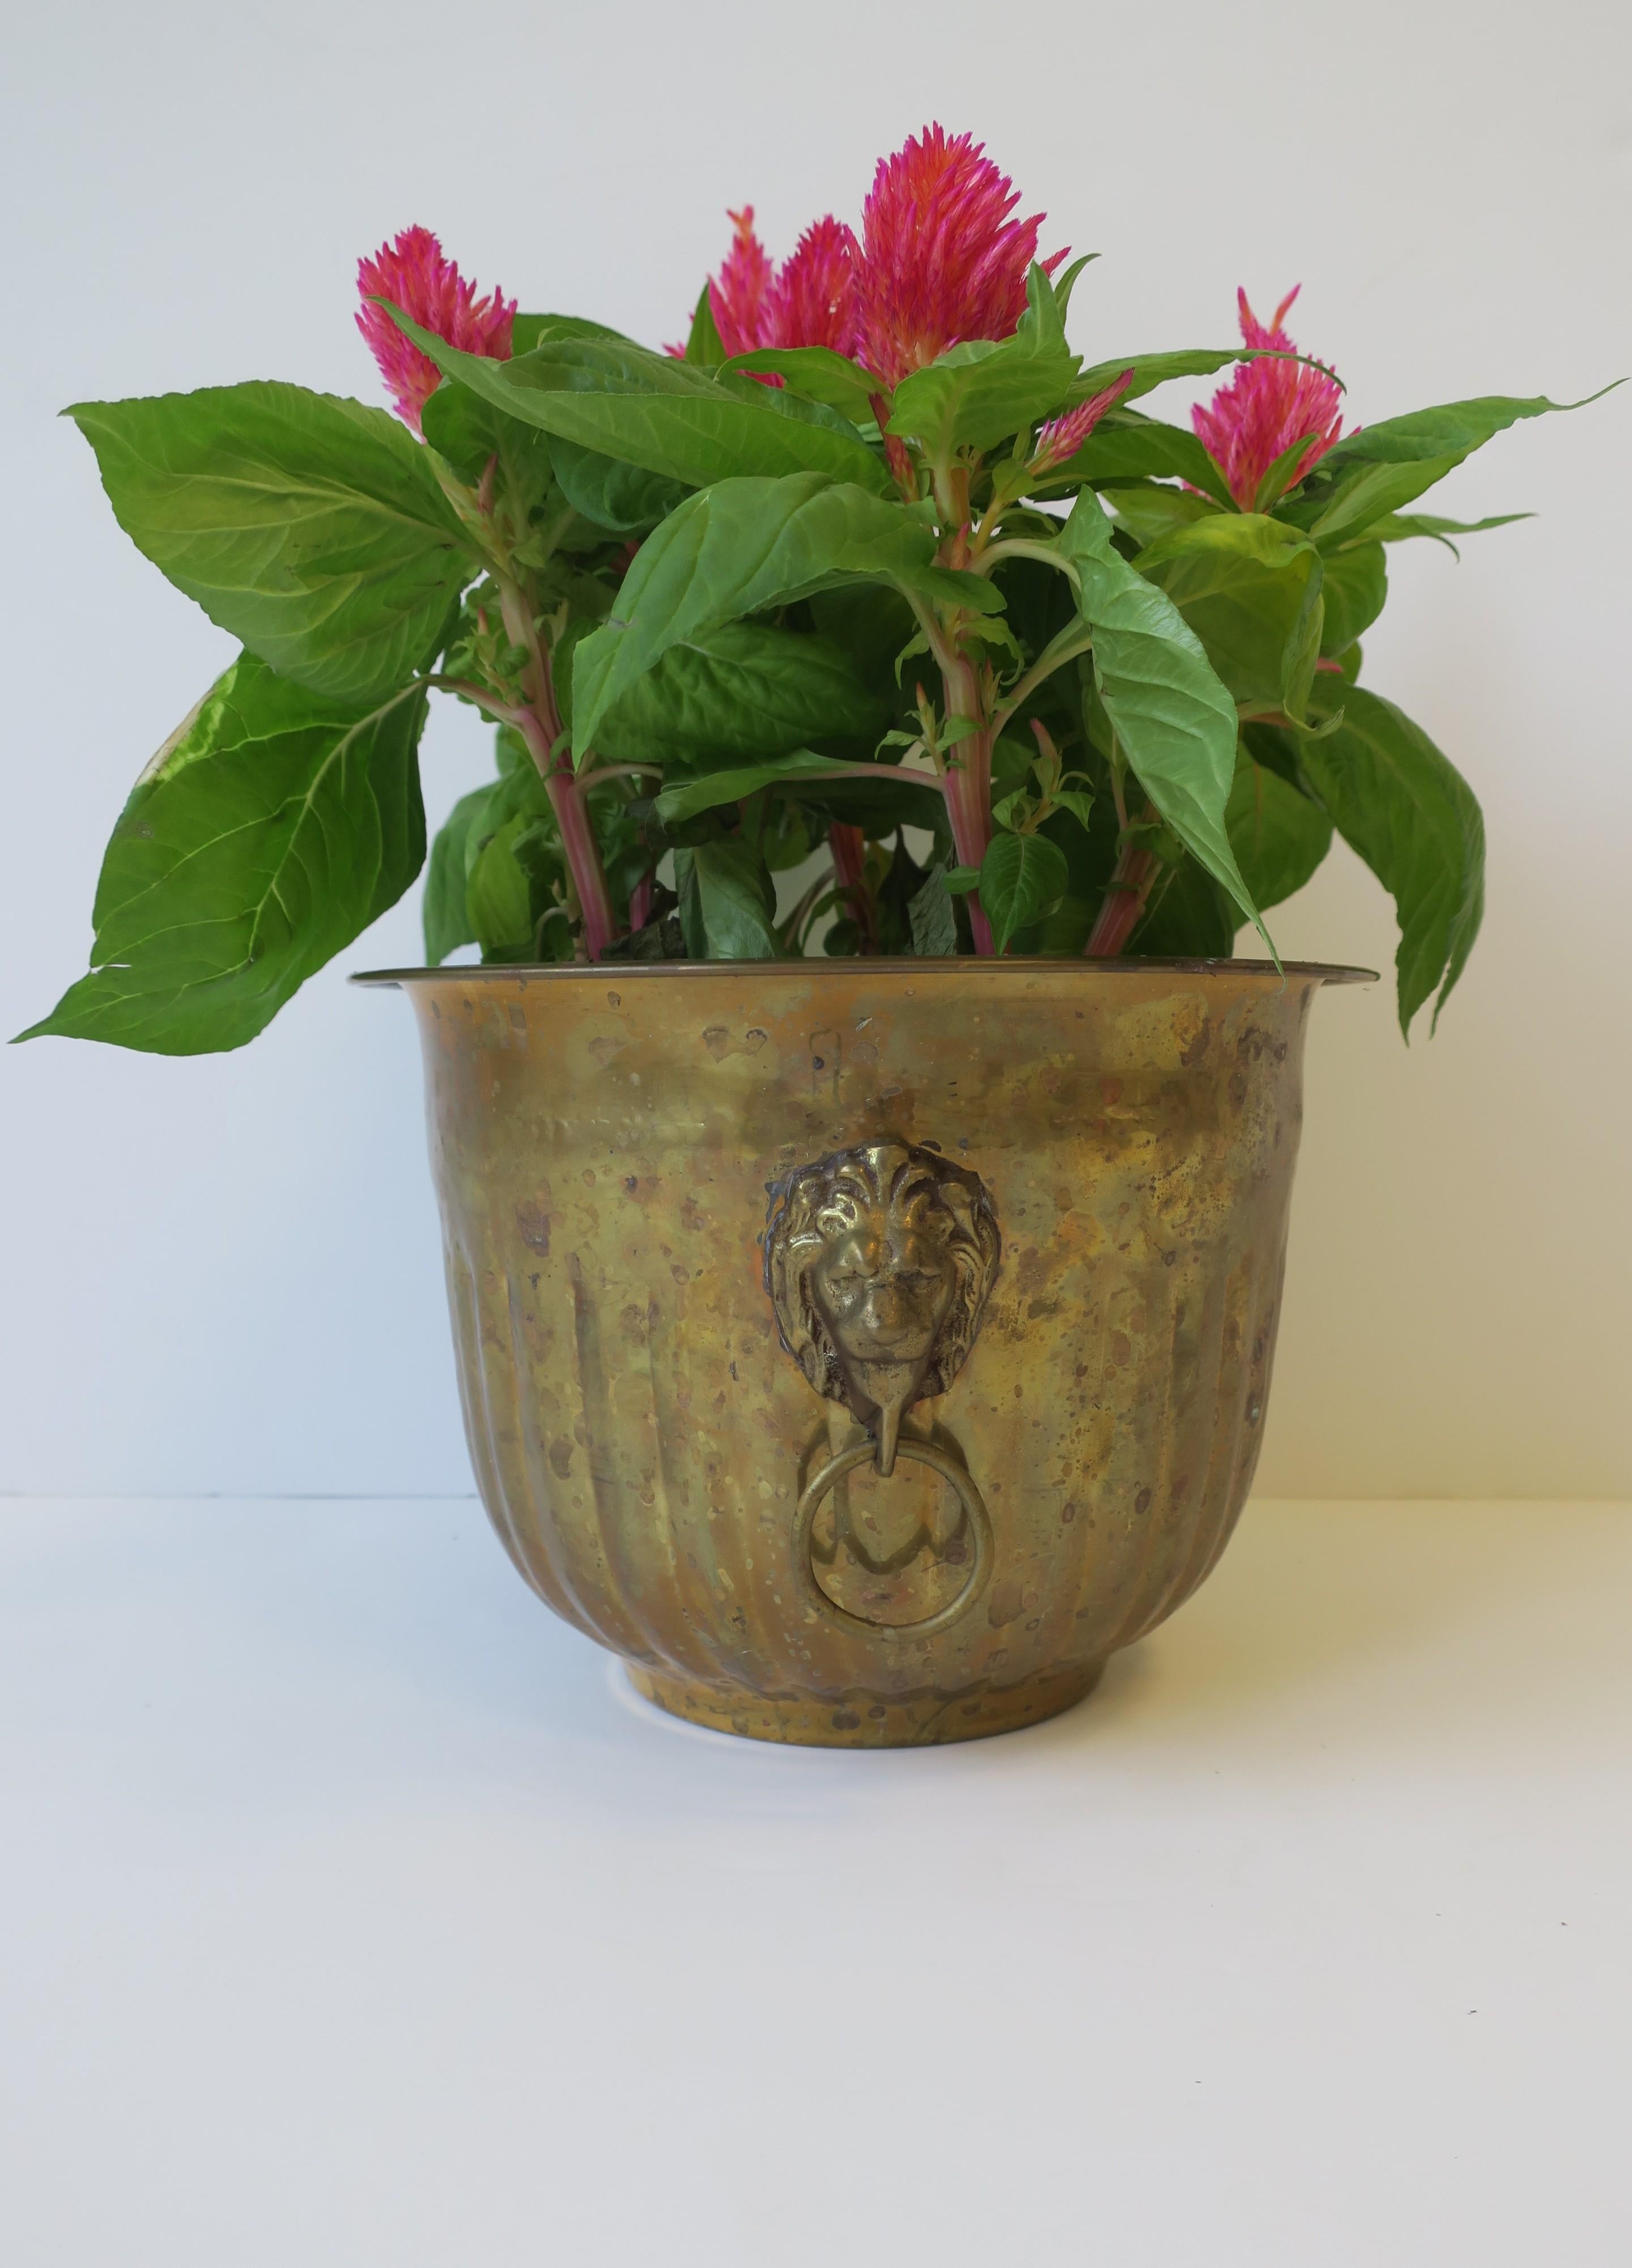 Brass Flower Plant Holder Cachepot Jardiniere w/Lion Head Design Regency Style 2